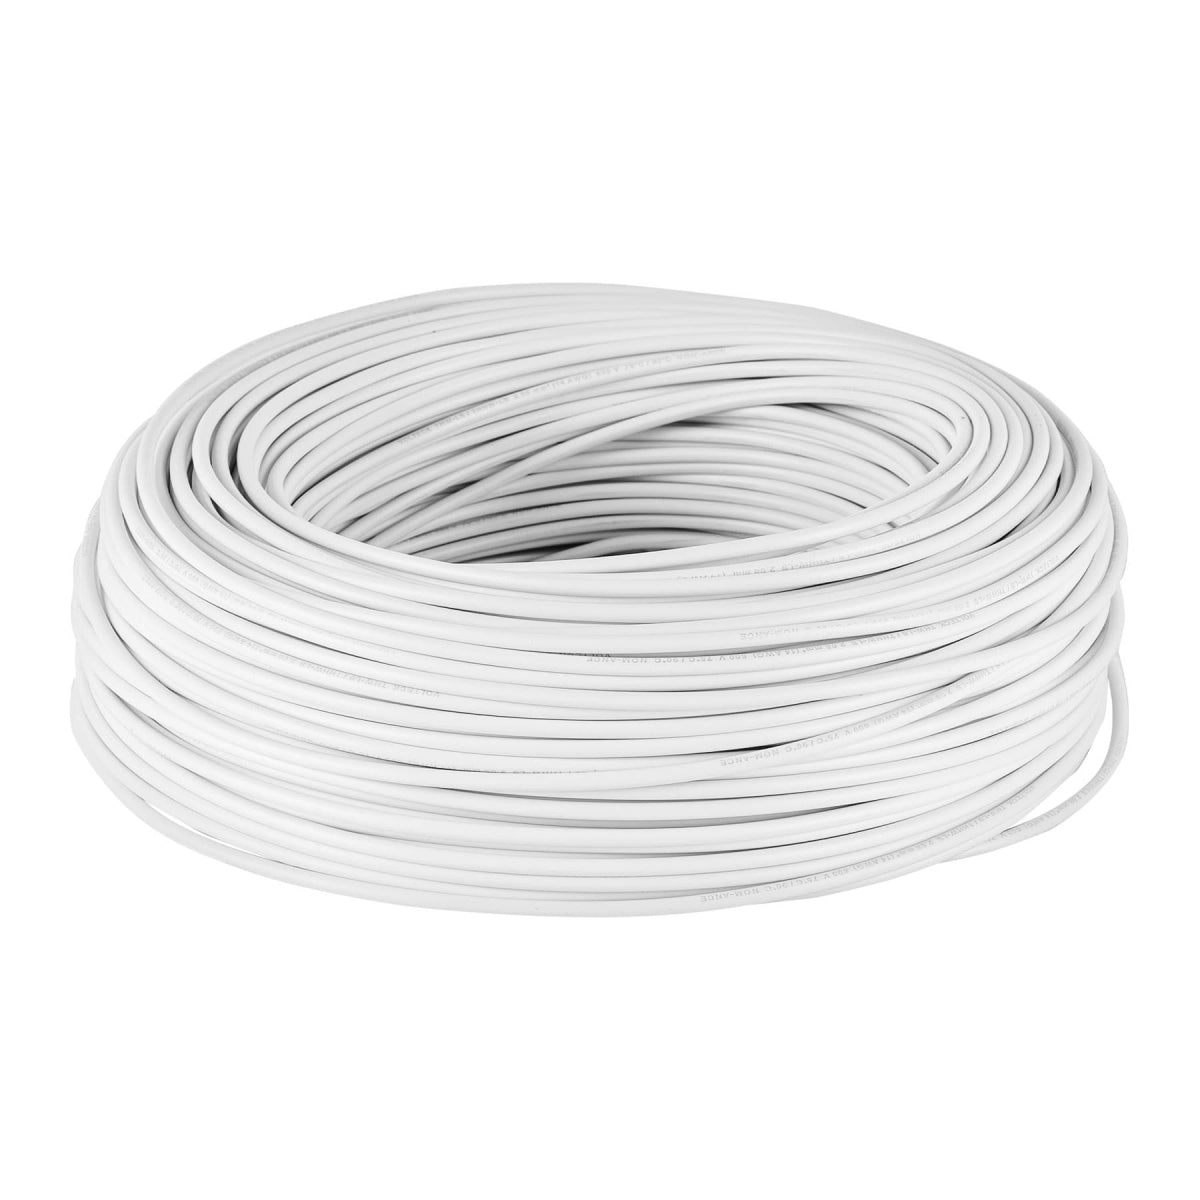 Cable sencillo blanco #14 cobre (rollo 100m) SKU:'46057